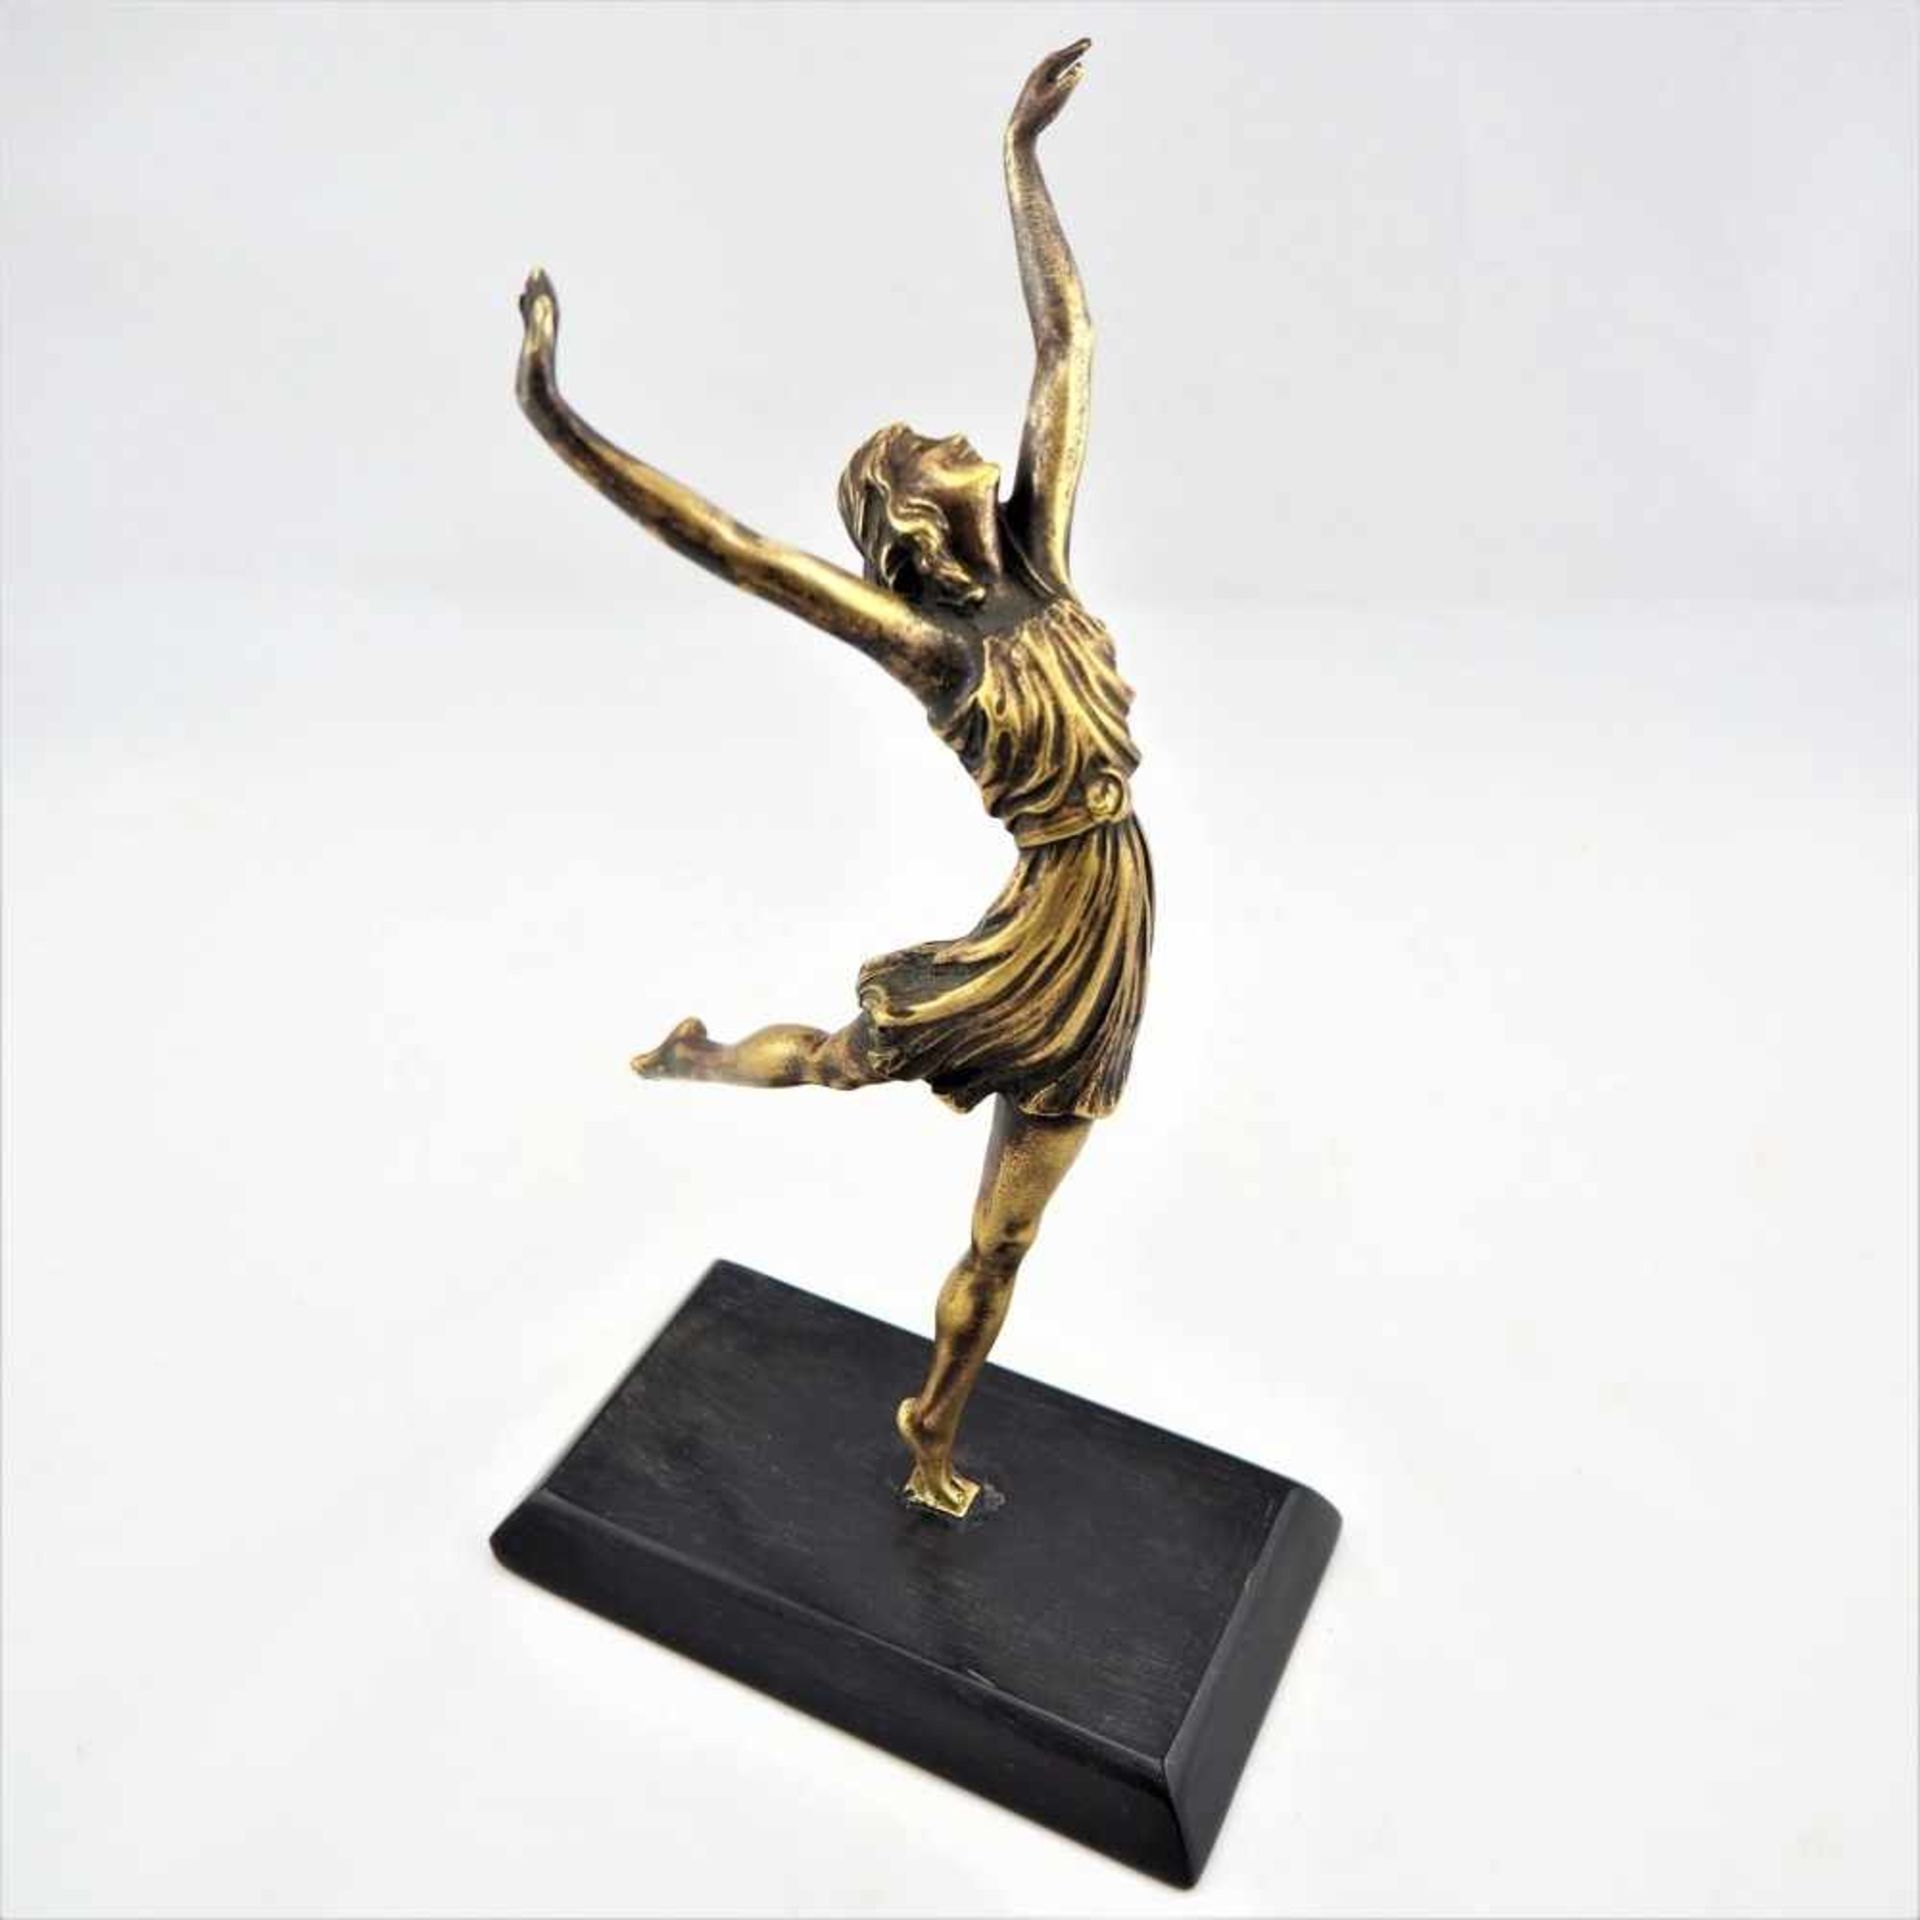 Jugendstil Tänzerin, um 1900Fein ausgearbeitete Bronze Skulptur einer tänzelnden Schönheit, auf